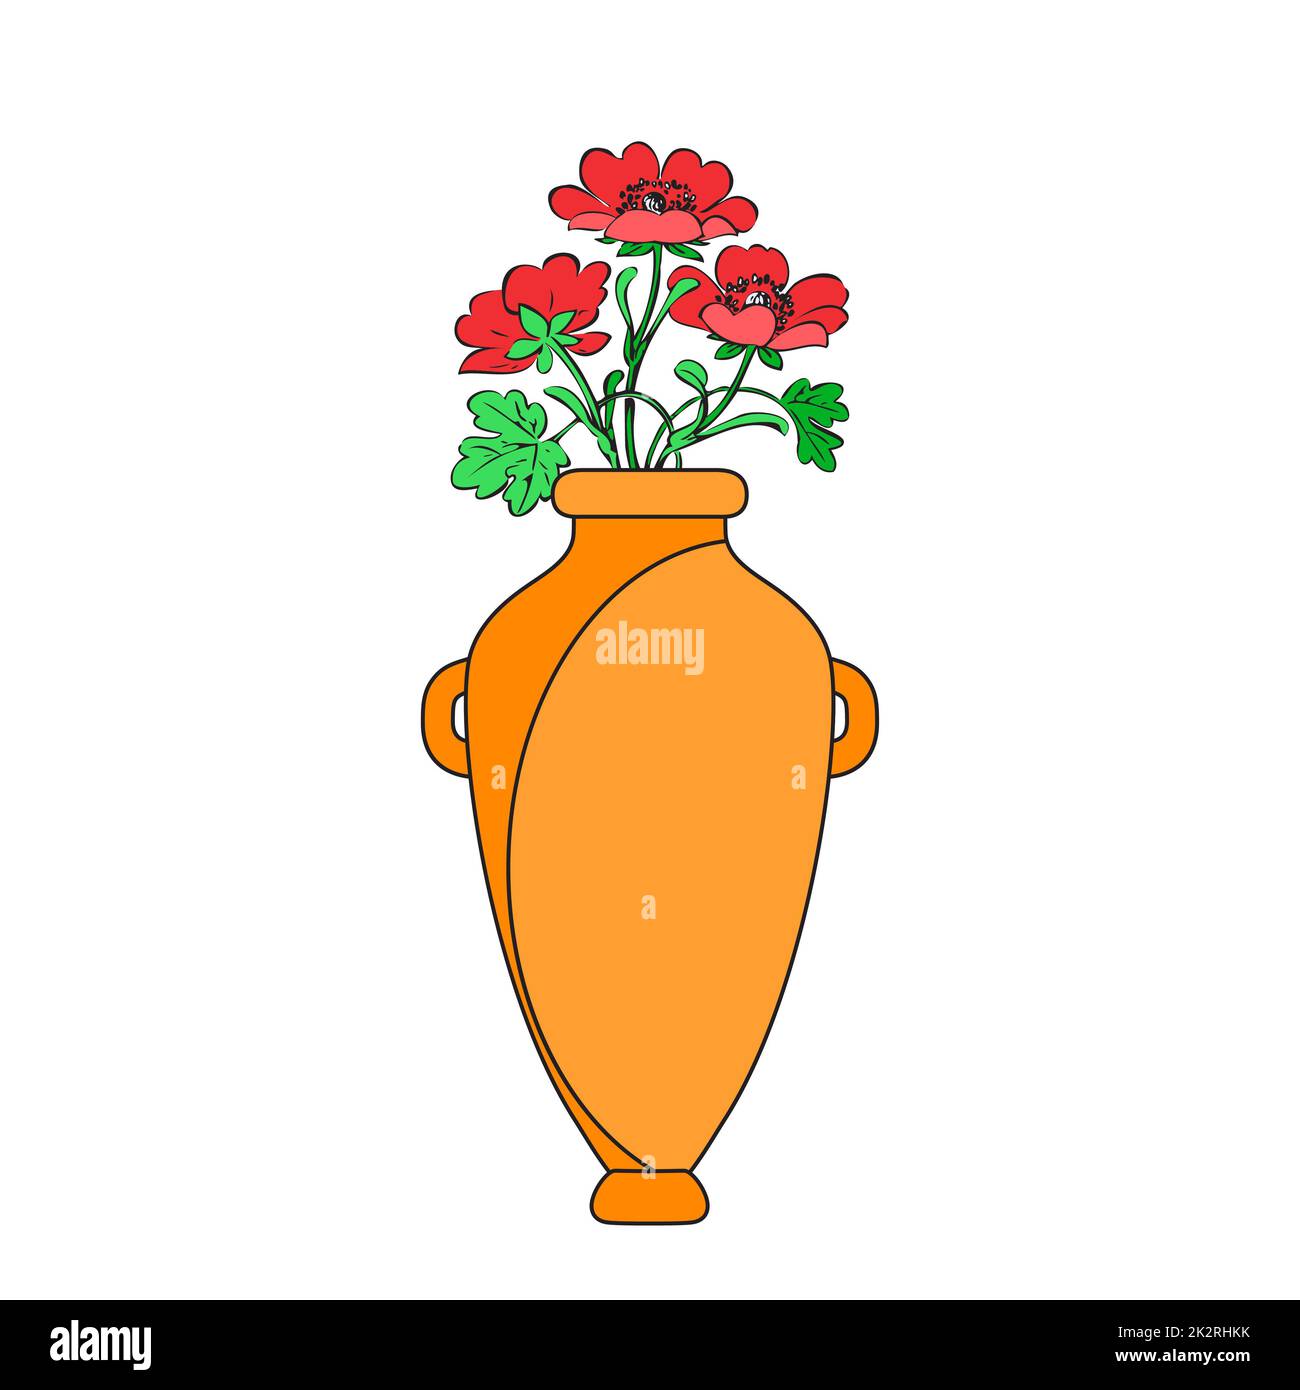 Vasi colorati con fiori in fiore per decorazioni e interni. Bouquet di papavero rosso in vaso giallo isolato su sfondo bianco. Illustrazione vettoriale Foto Stock